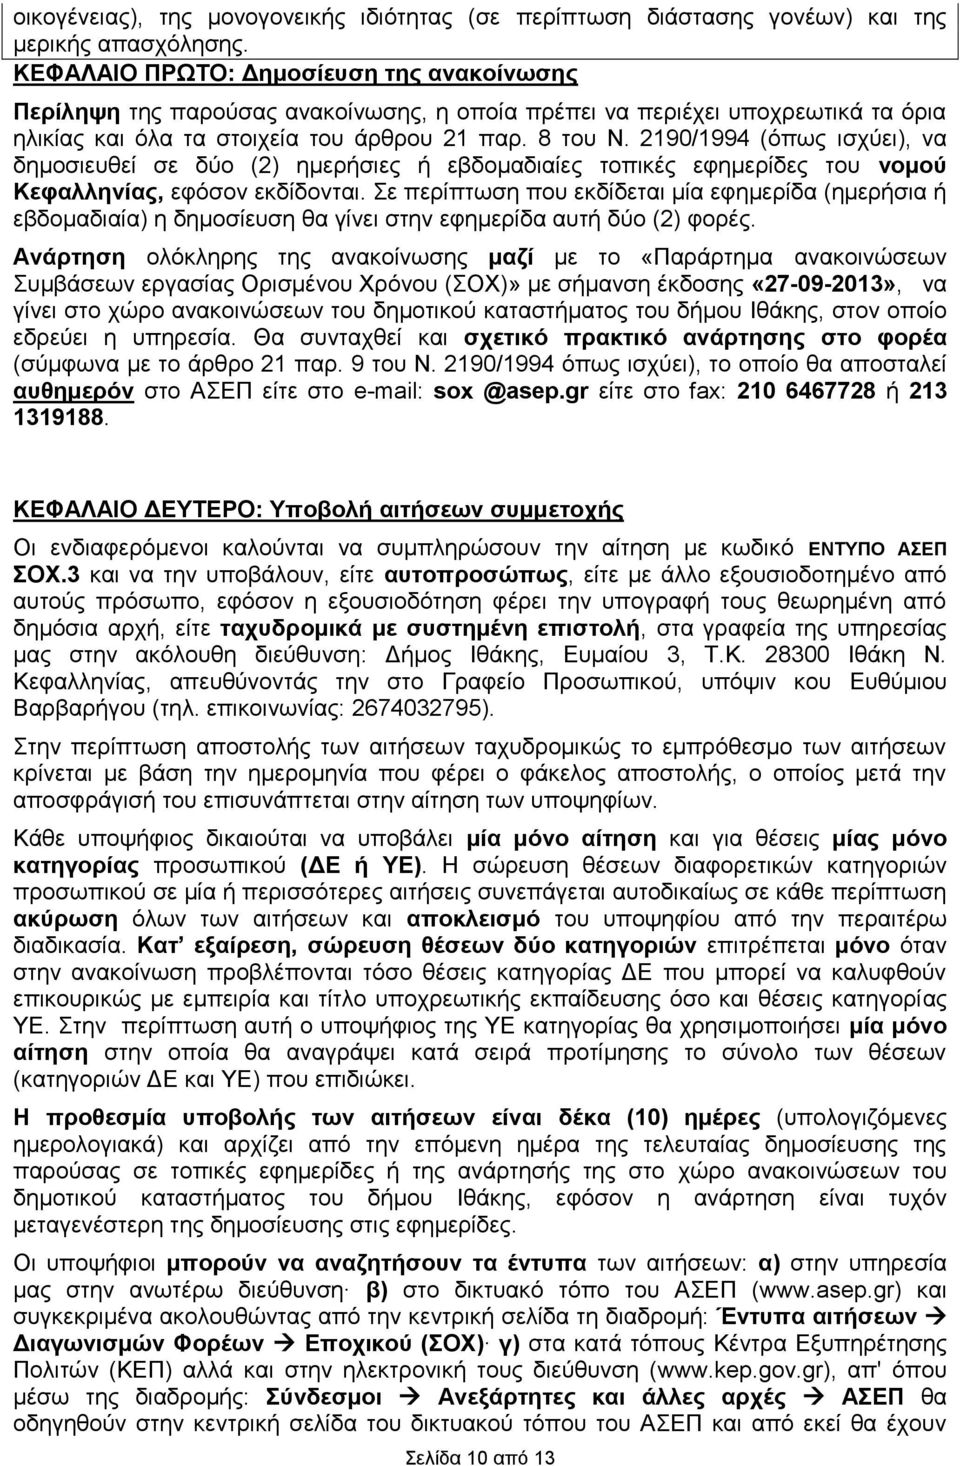 2190/1994 (όπως ισχύει), να δημοσιευθεί σε δύο (2) ημερήσιες ή εβδομαδιαίες τοπικές εφημερίδες του νομού Κεφαλληνίας, εφόσον εκδίδονται.